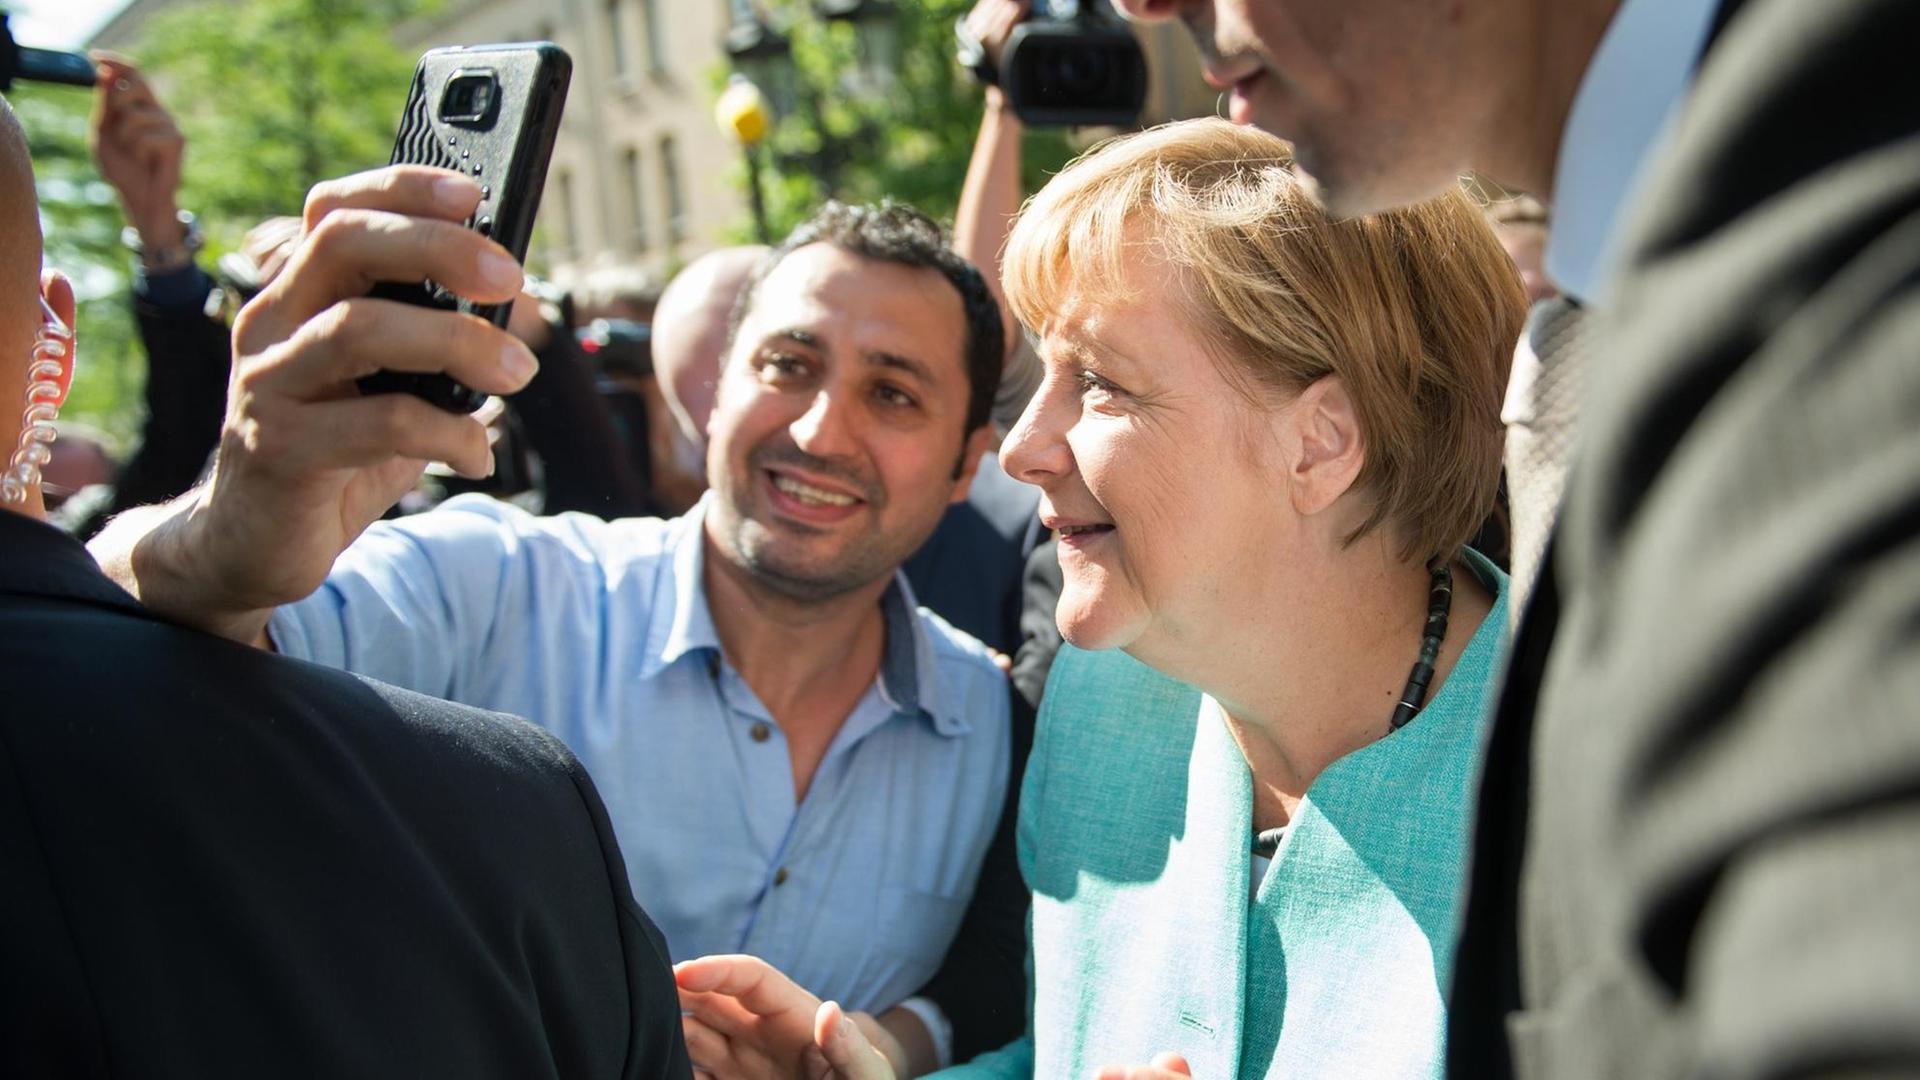 Bundeskanzlerin Merkel posiert in Berlin-Spandau mit einem Flüchtlinge für ein Selfie. Beide sind von Menschen umringt.